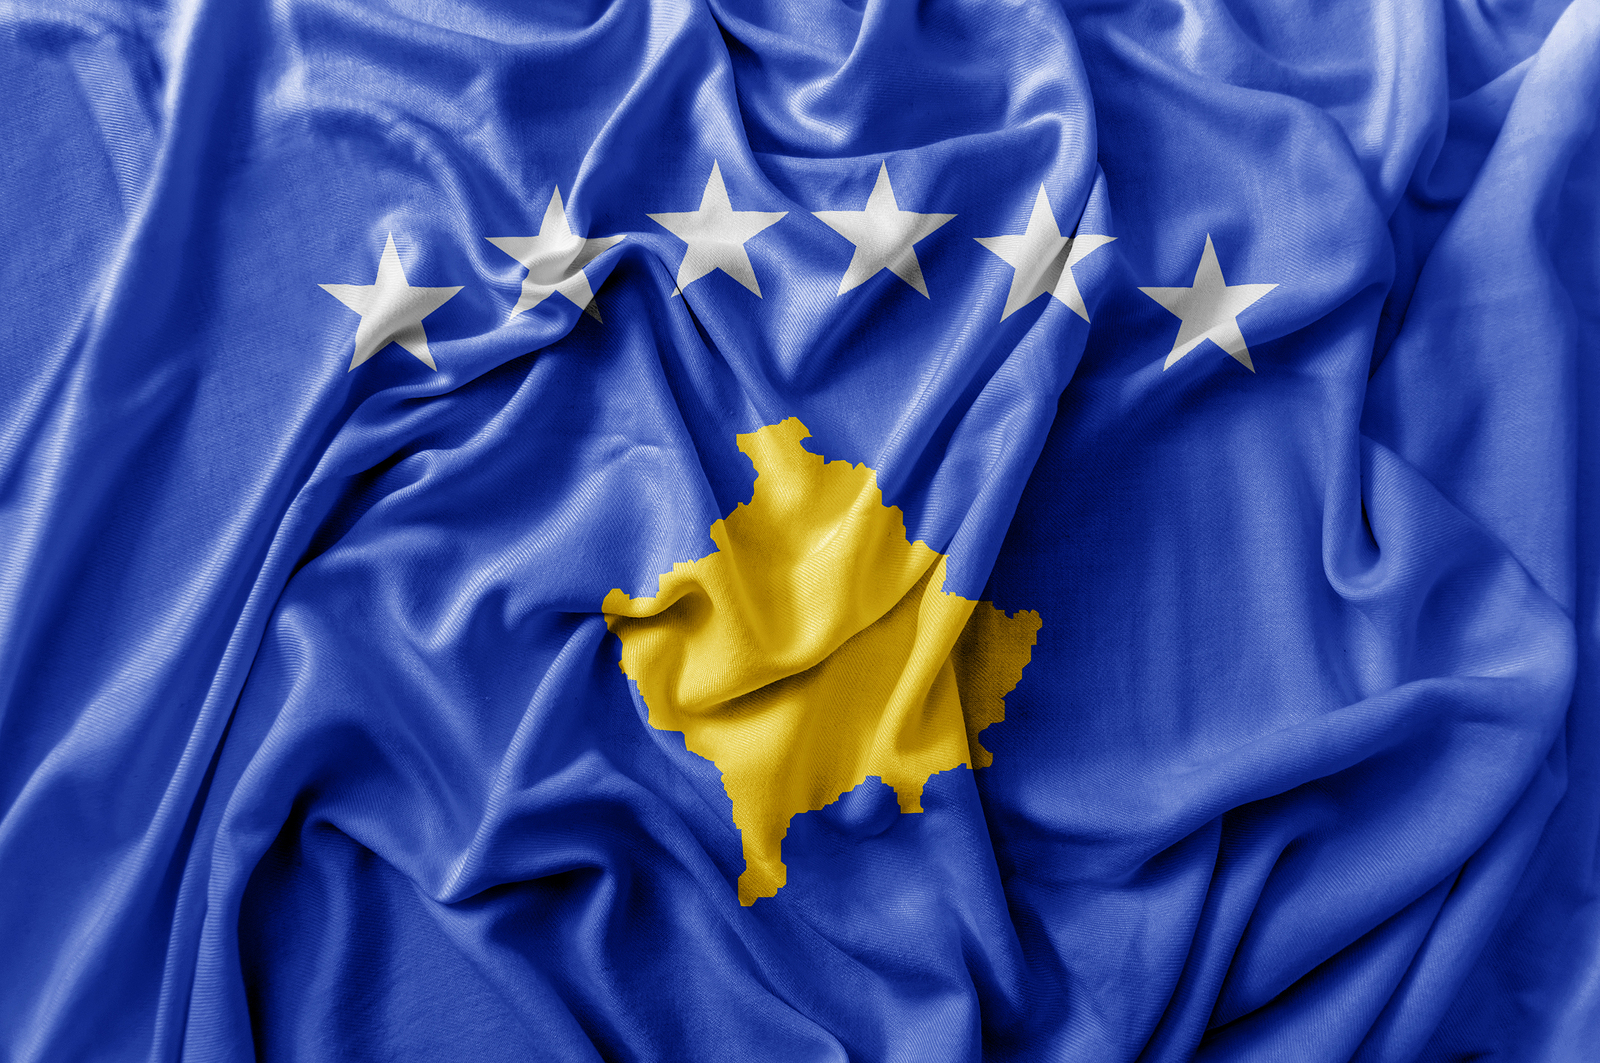 Γιατί η Κύπρος, η Ελλάδα, η Ρουμανία, η Σλοβακία, η Ισπανία δεν αναγνωρίζουν το Κοσσυφοπέδιο;